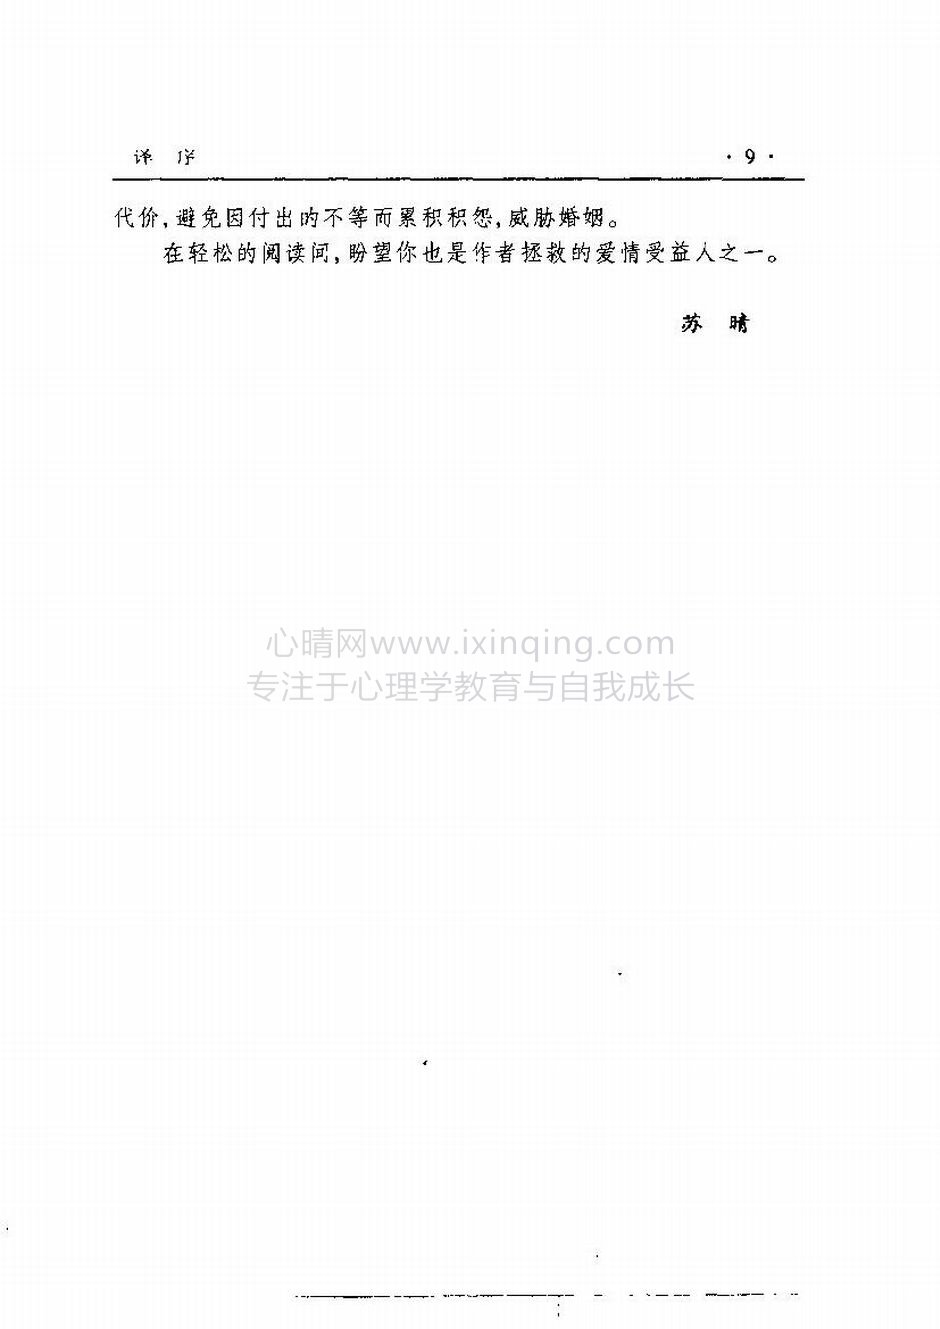 封面、原序、译序、中文版出版前言(12)